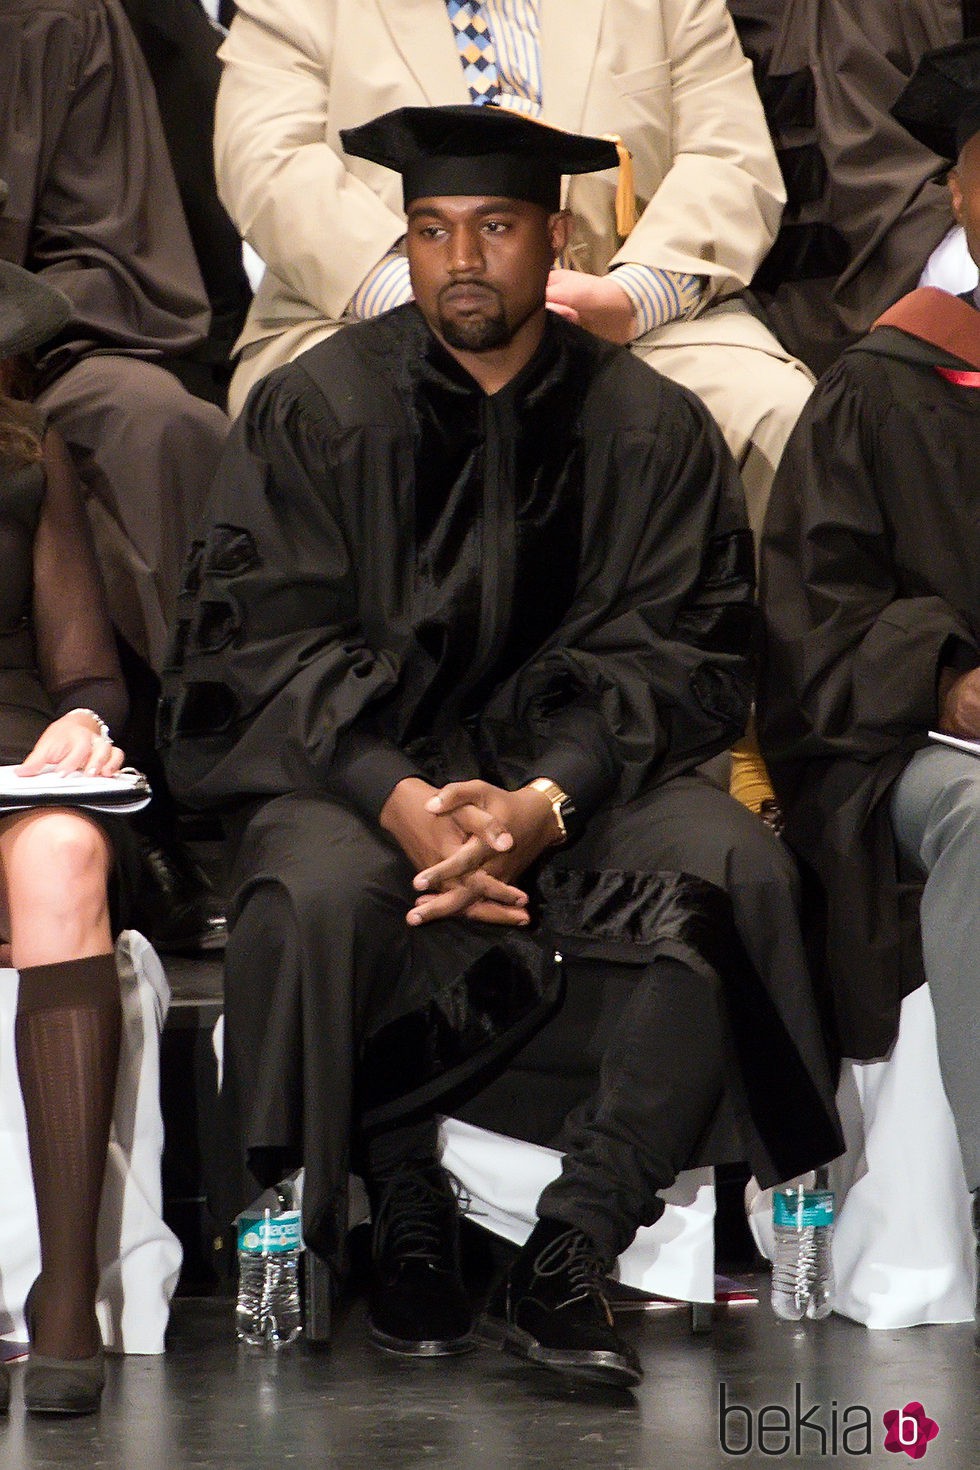 Kanye West con birrete en su graduación de doctorado